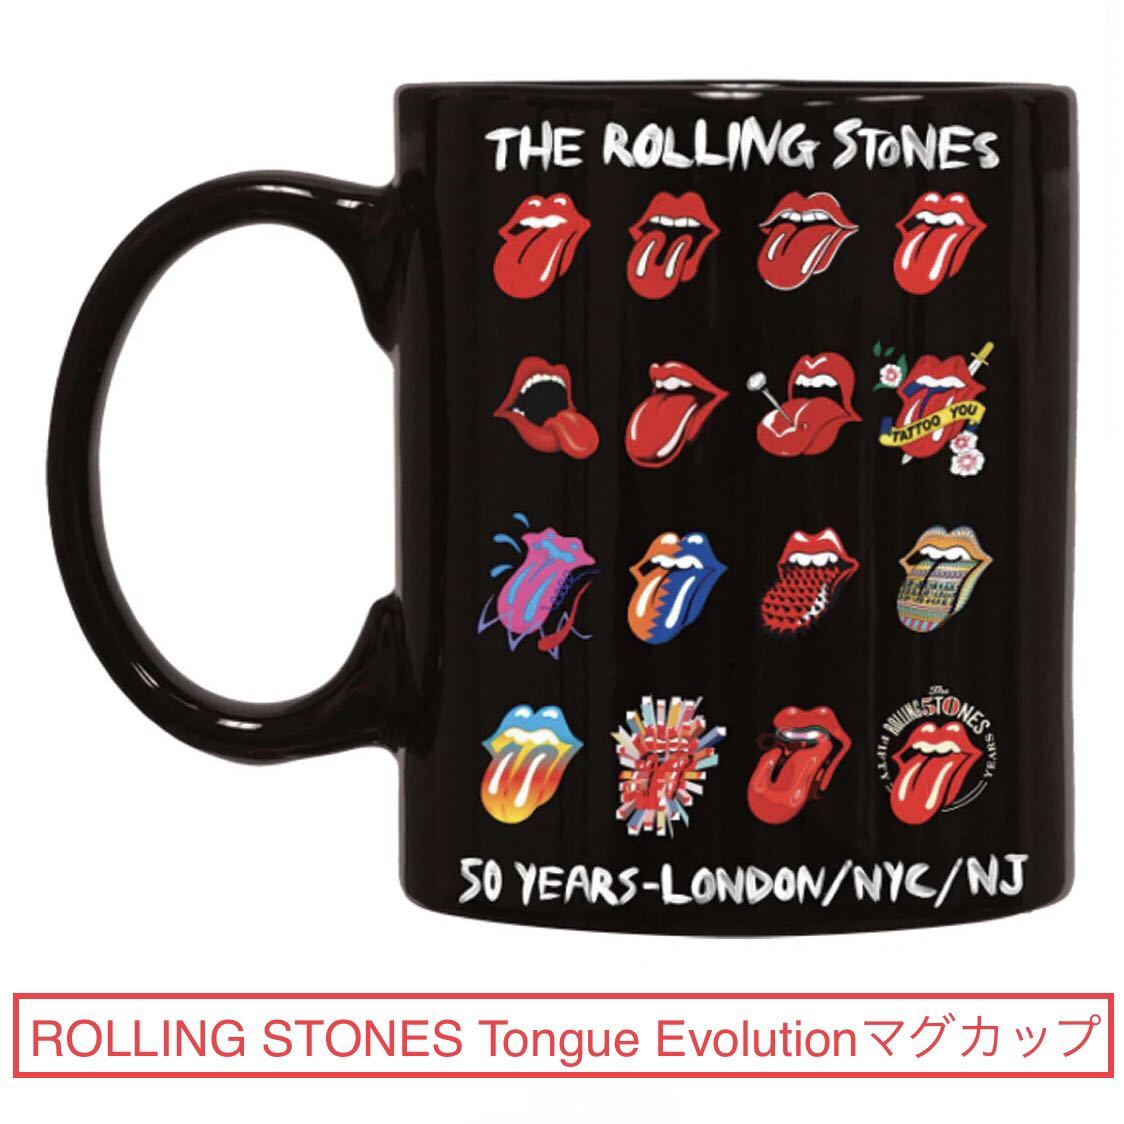 2014来日記念★公式 マグカップ ROLLING STONES Tongues Evolution With Logo & 50 Years-London/NYC/NJ★東京ドーム ローリングストーンズ_画像2